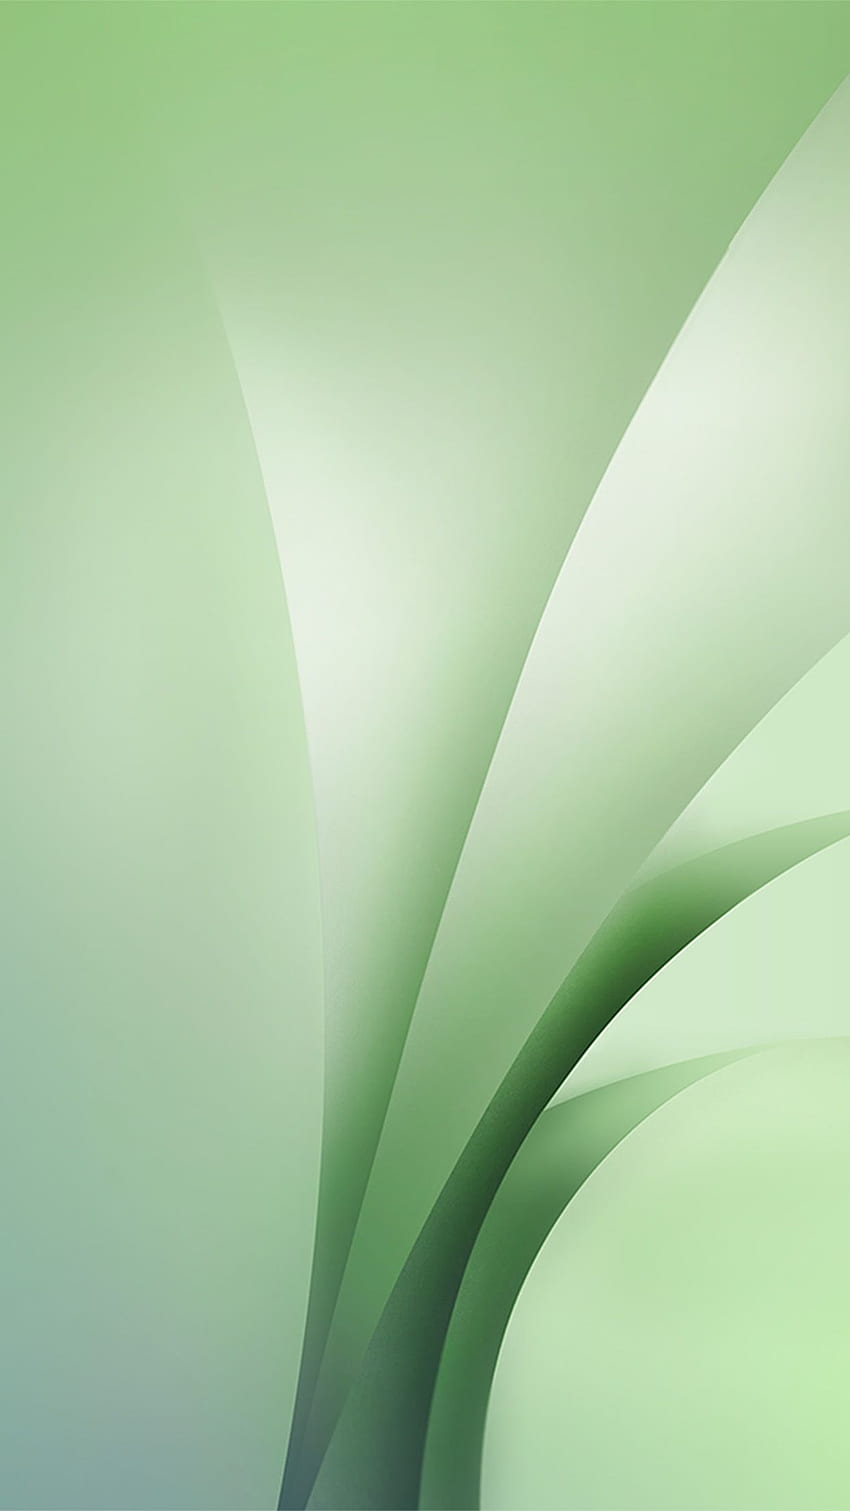 サムスン ギャラクシー アブストラクト グリーン パターン アンドロイド - サムスンのアンドロイド、アブストラクト グリーン ネイチャー HD電話の壁紙